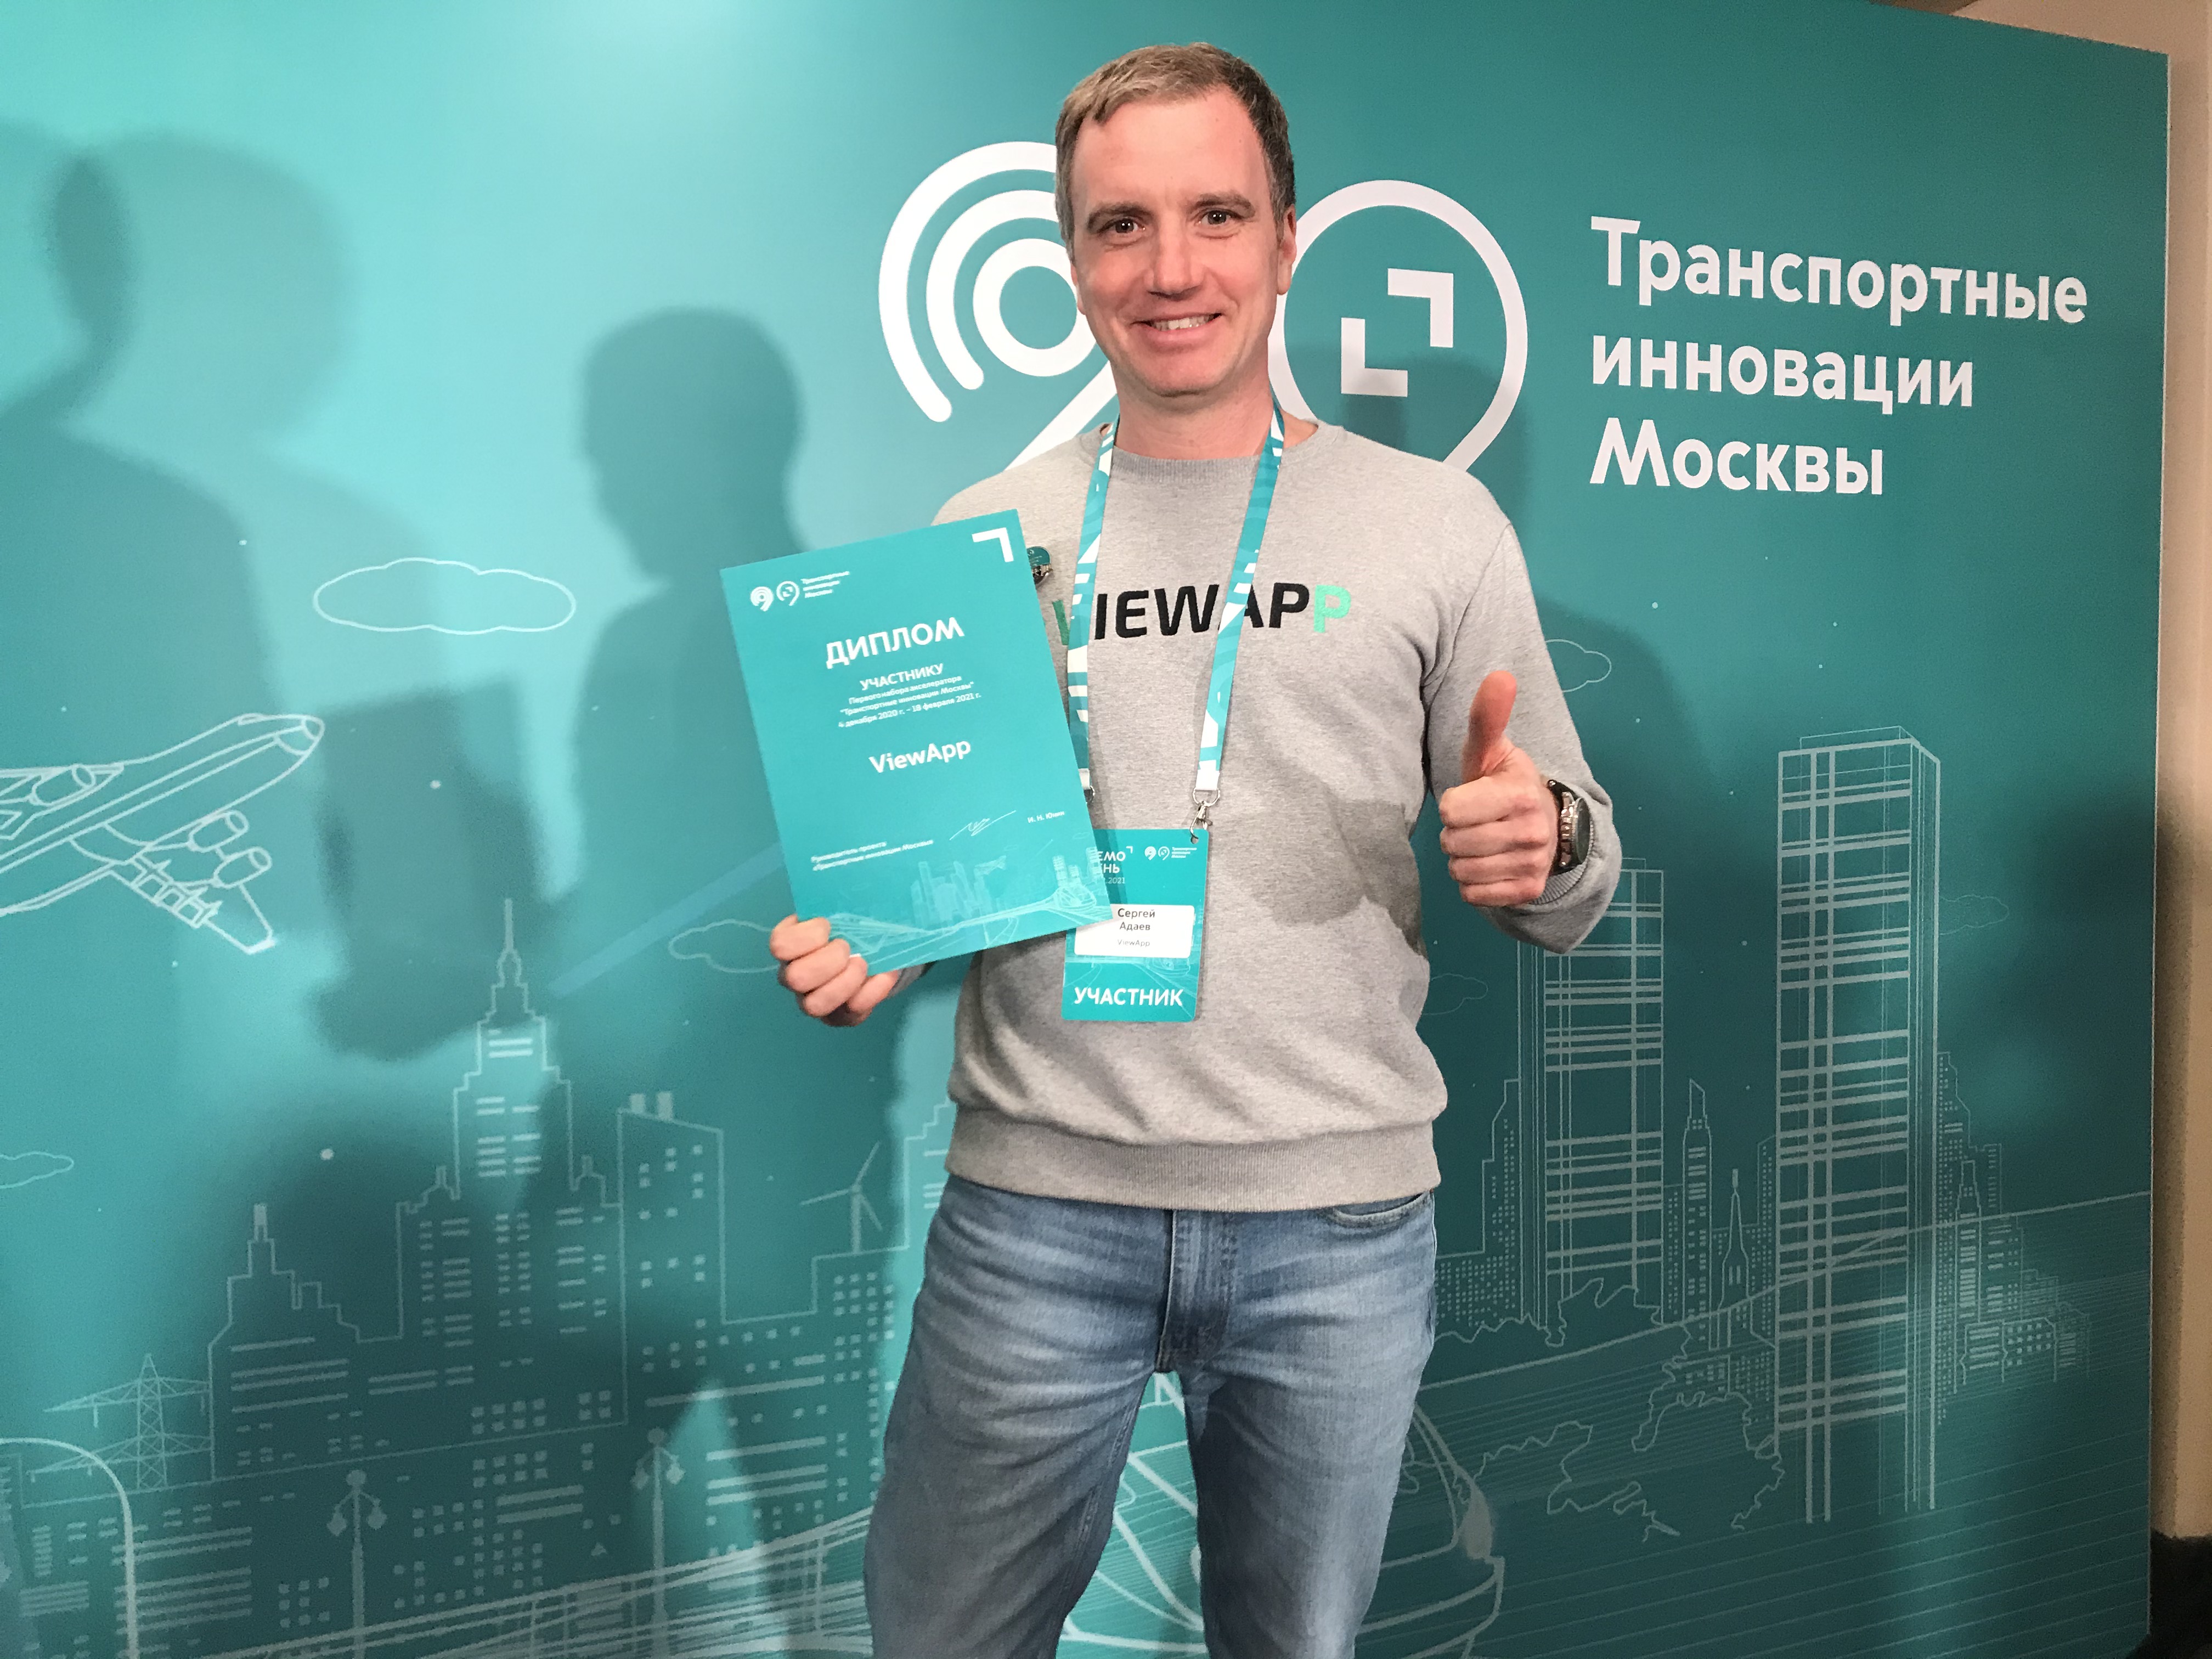 ViewApp – участник демо-дня акселератора "Транспортные инновации Москвы"